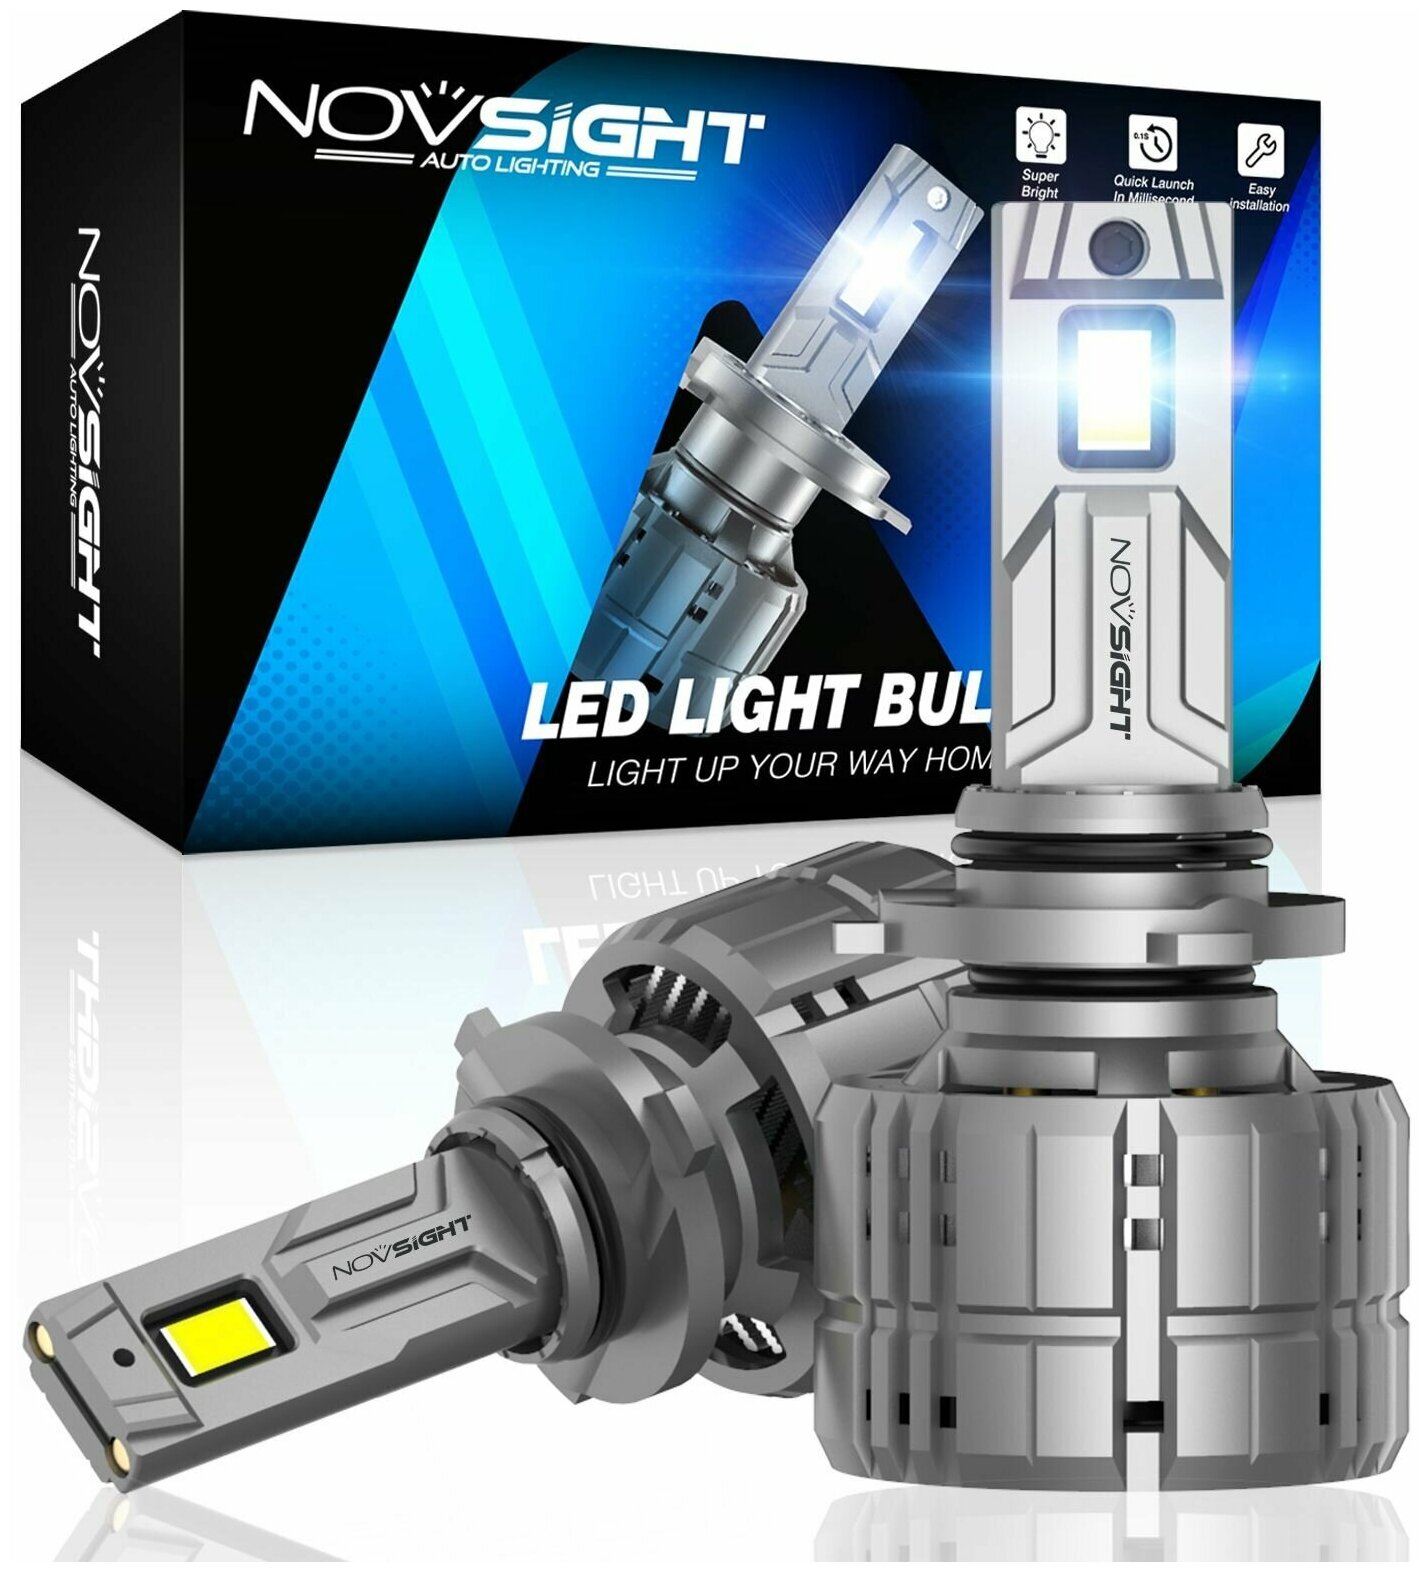 Светодиодная лампа Novsight N60 HB3 9005 цоколь P20d 200Вт 2шт 6500K 40000Лм белый свет LED автомобильная — купить в интернет-магазине по низкой цене на Яндекс Маркете